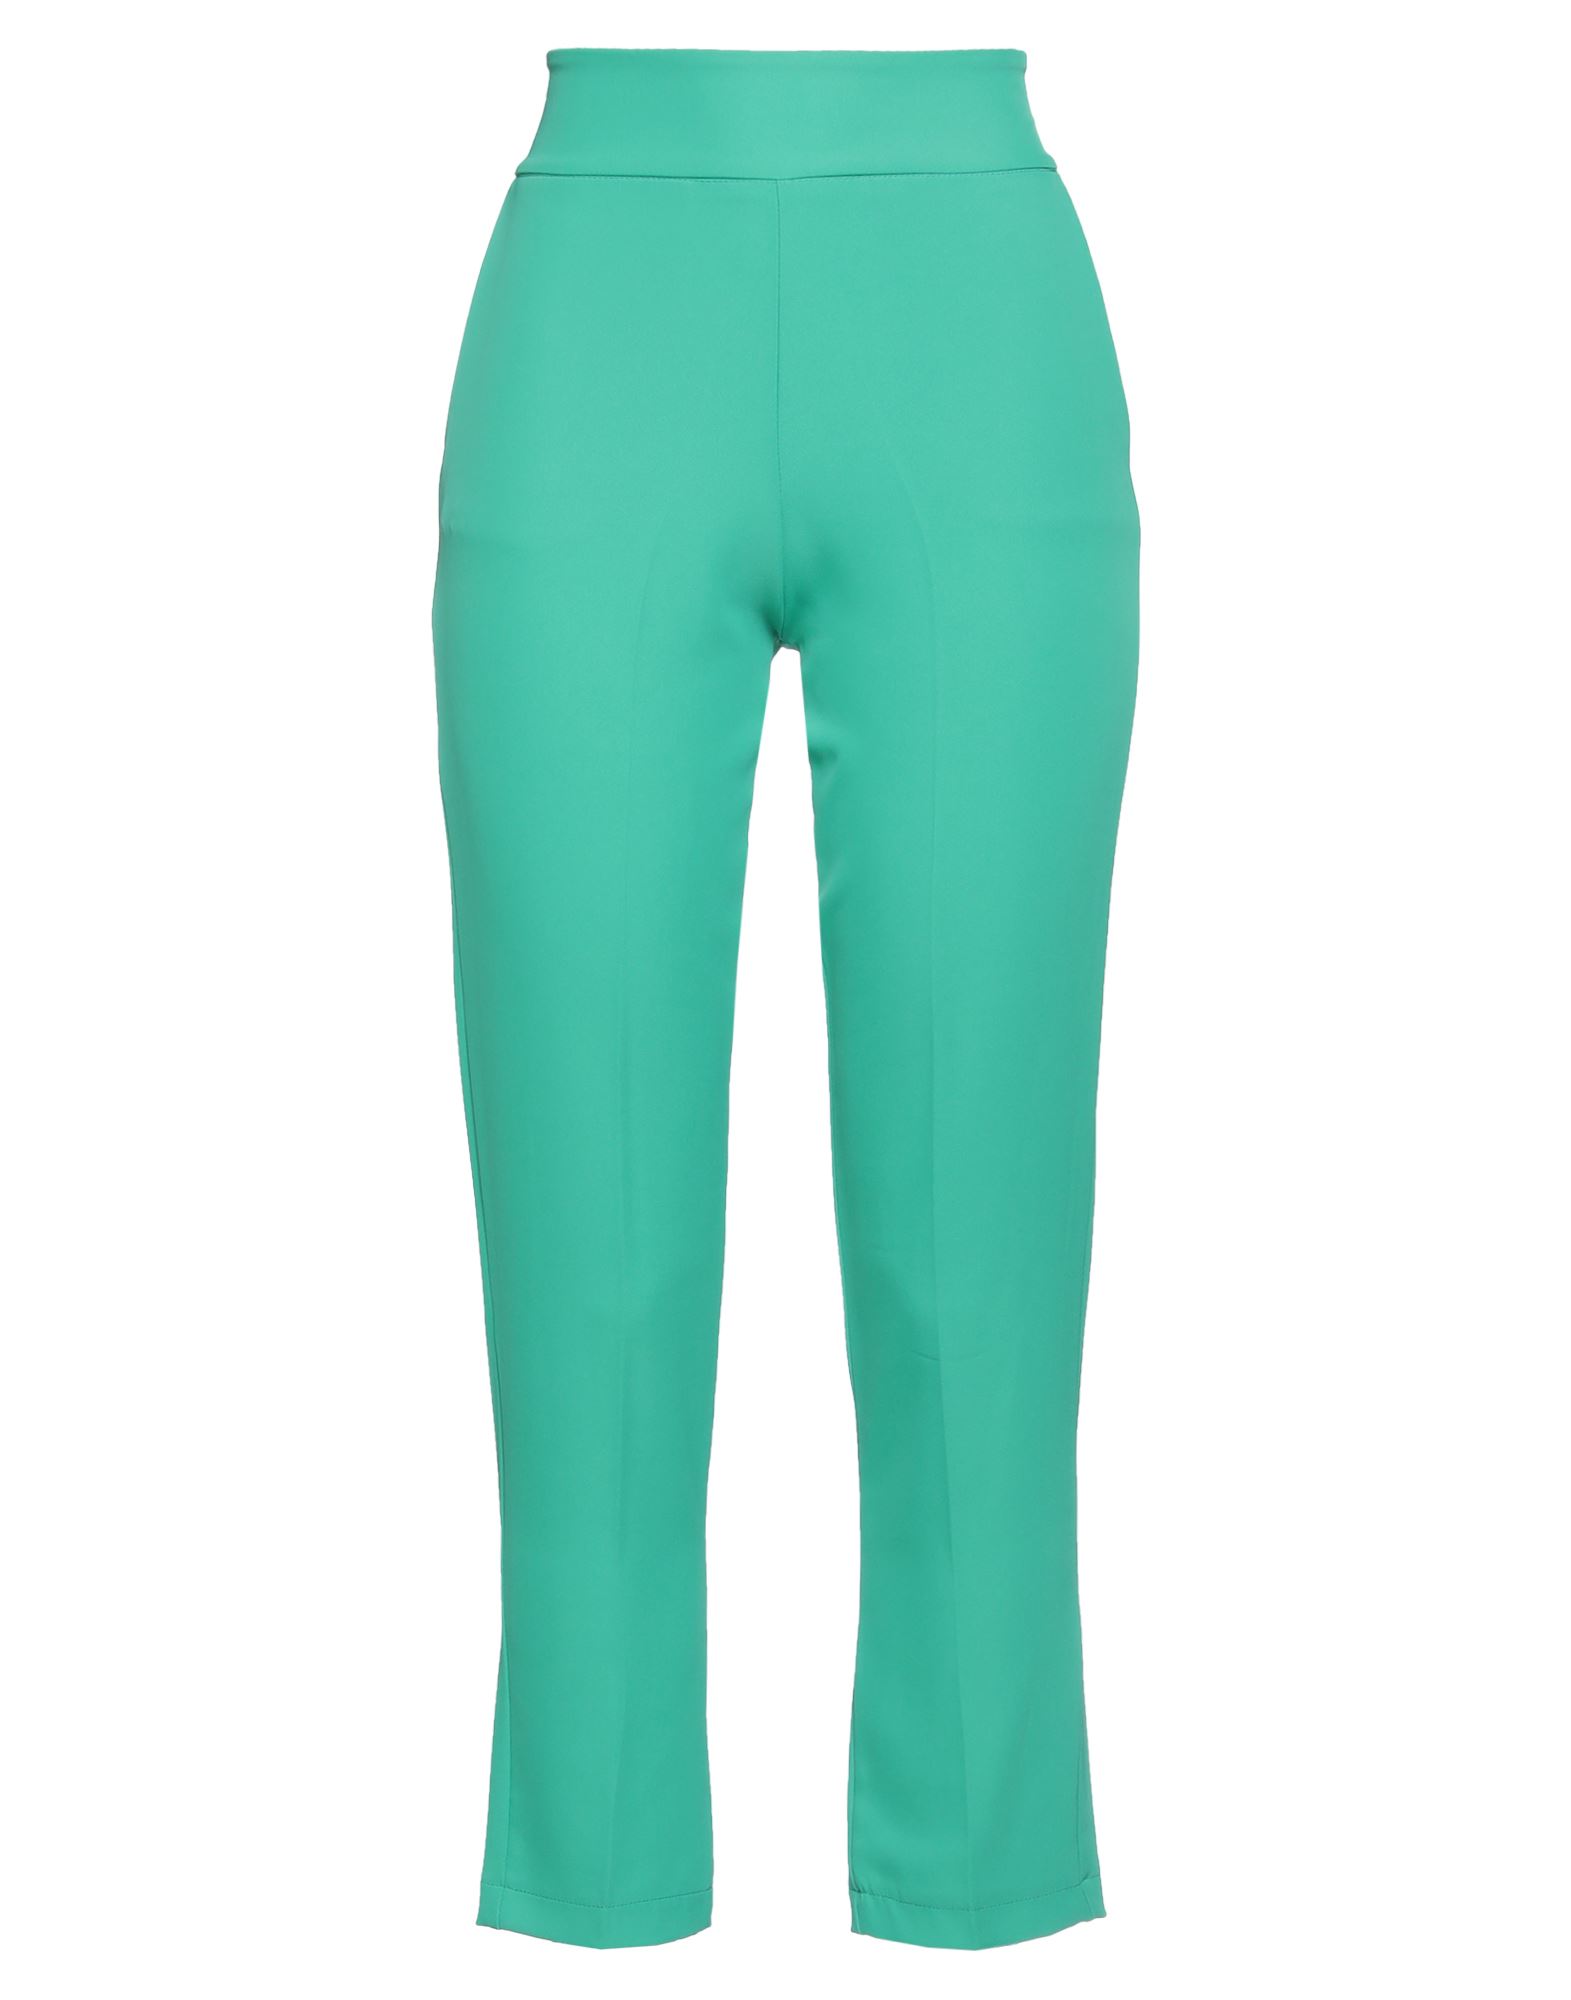 La.lolì La. Lolì Woman Pants Emerald Green Size 8 Polyester, Elastane